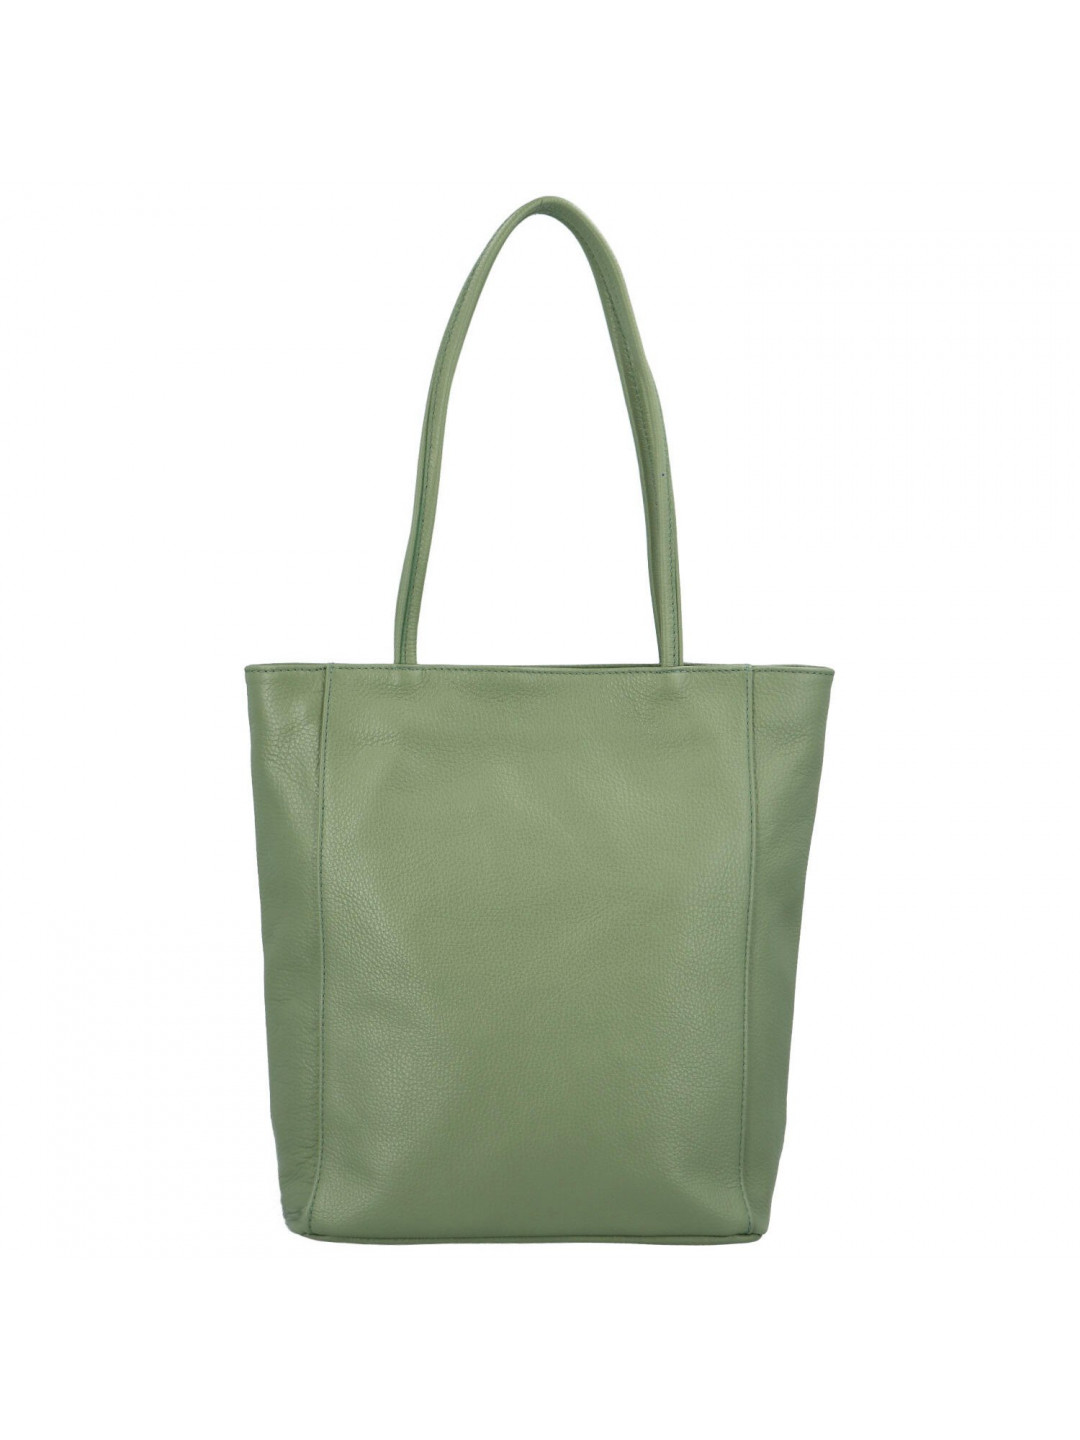 Luxusní dámská kožená kabelka Jane zelená